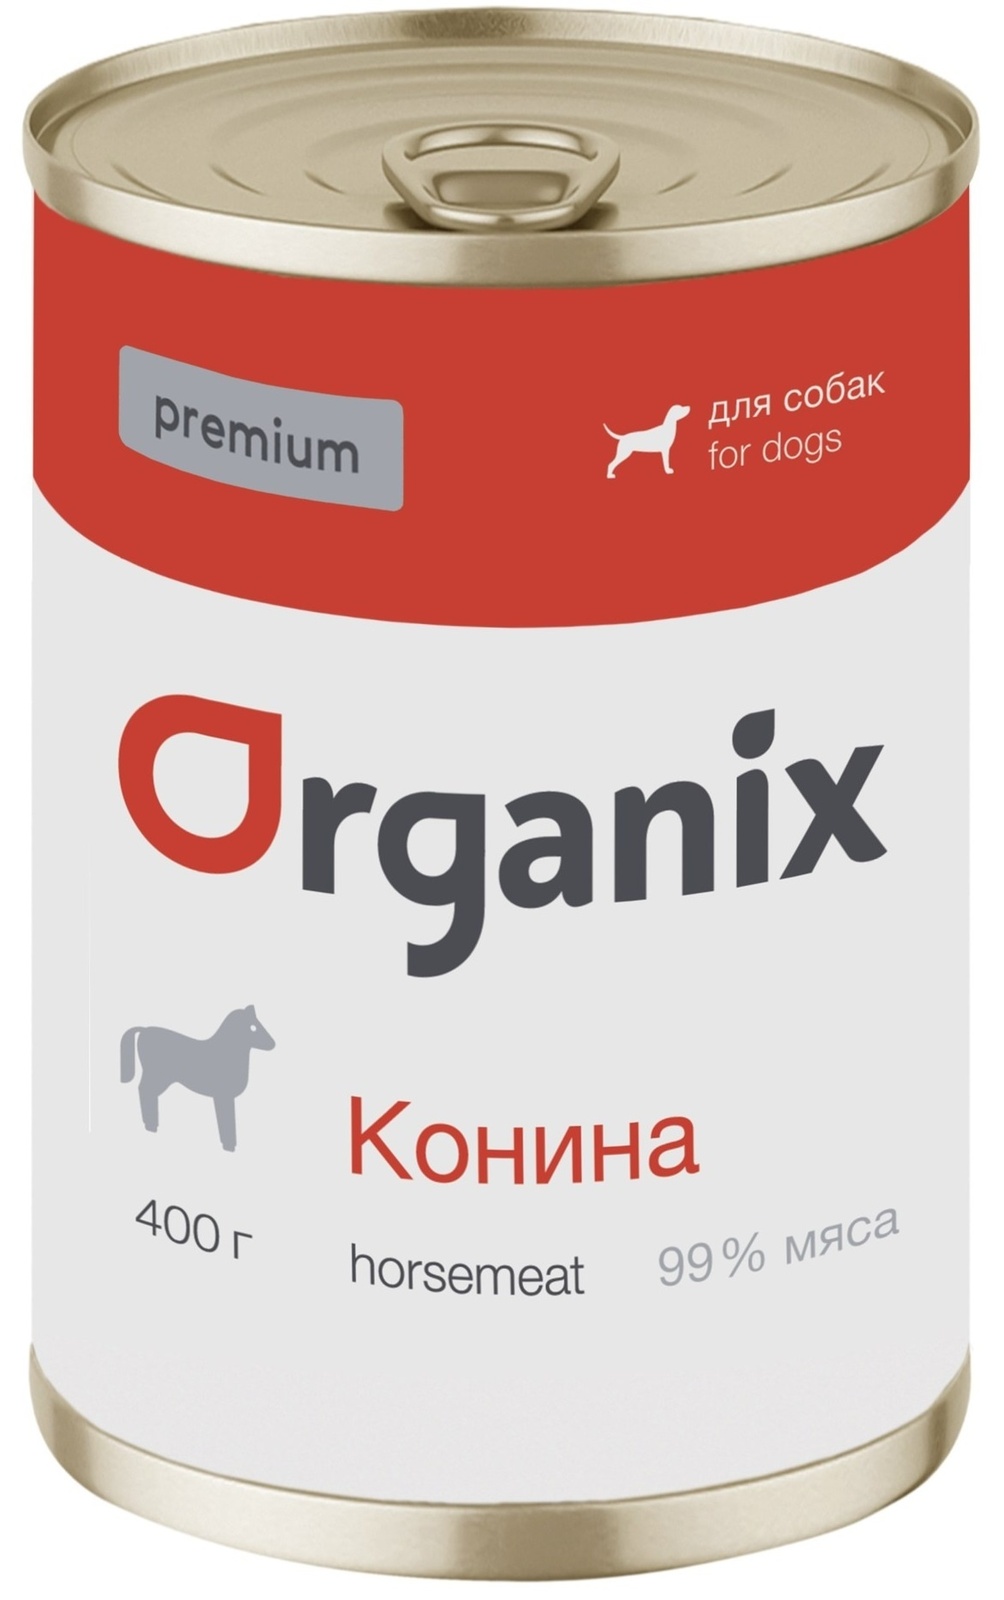 Organix консервы Organix монобелковые премиум консервы для собак, с кониной (400 г) organix консервы organix монобелковые премиум консервы для собак с кониной 400 г